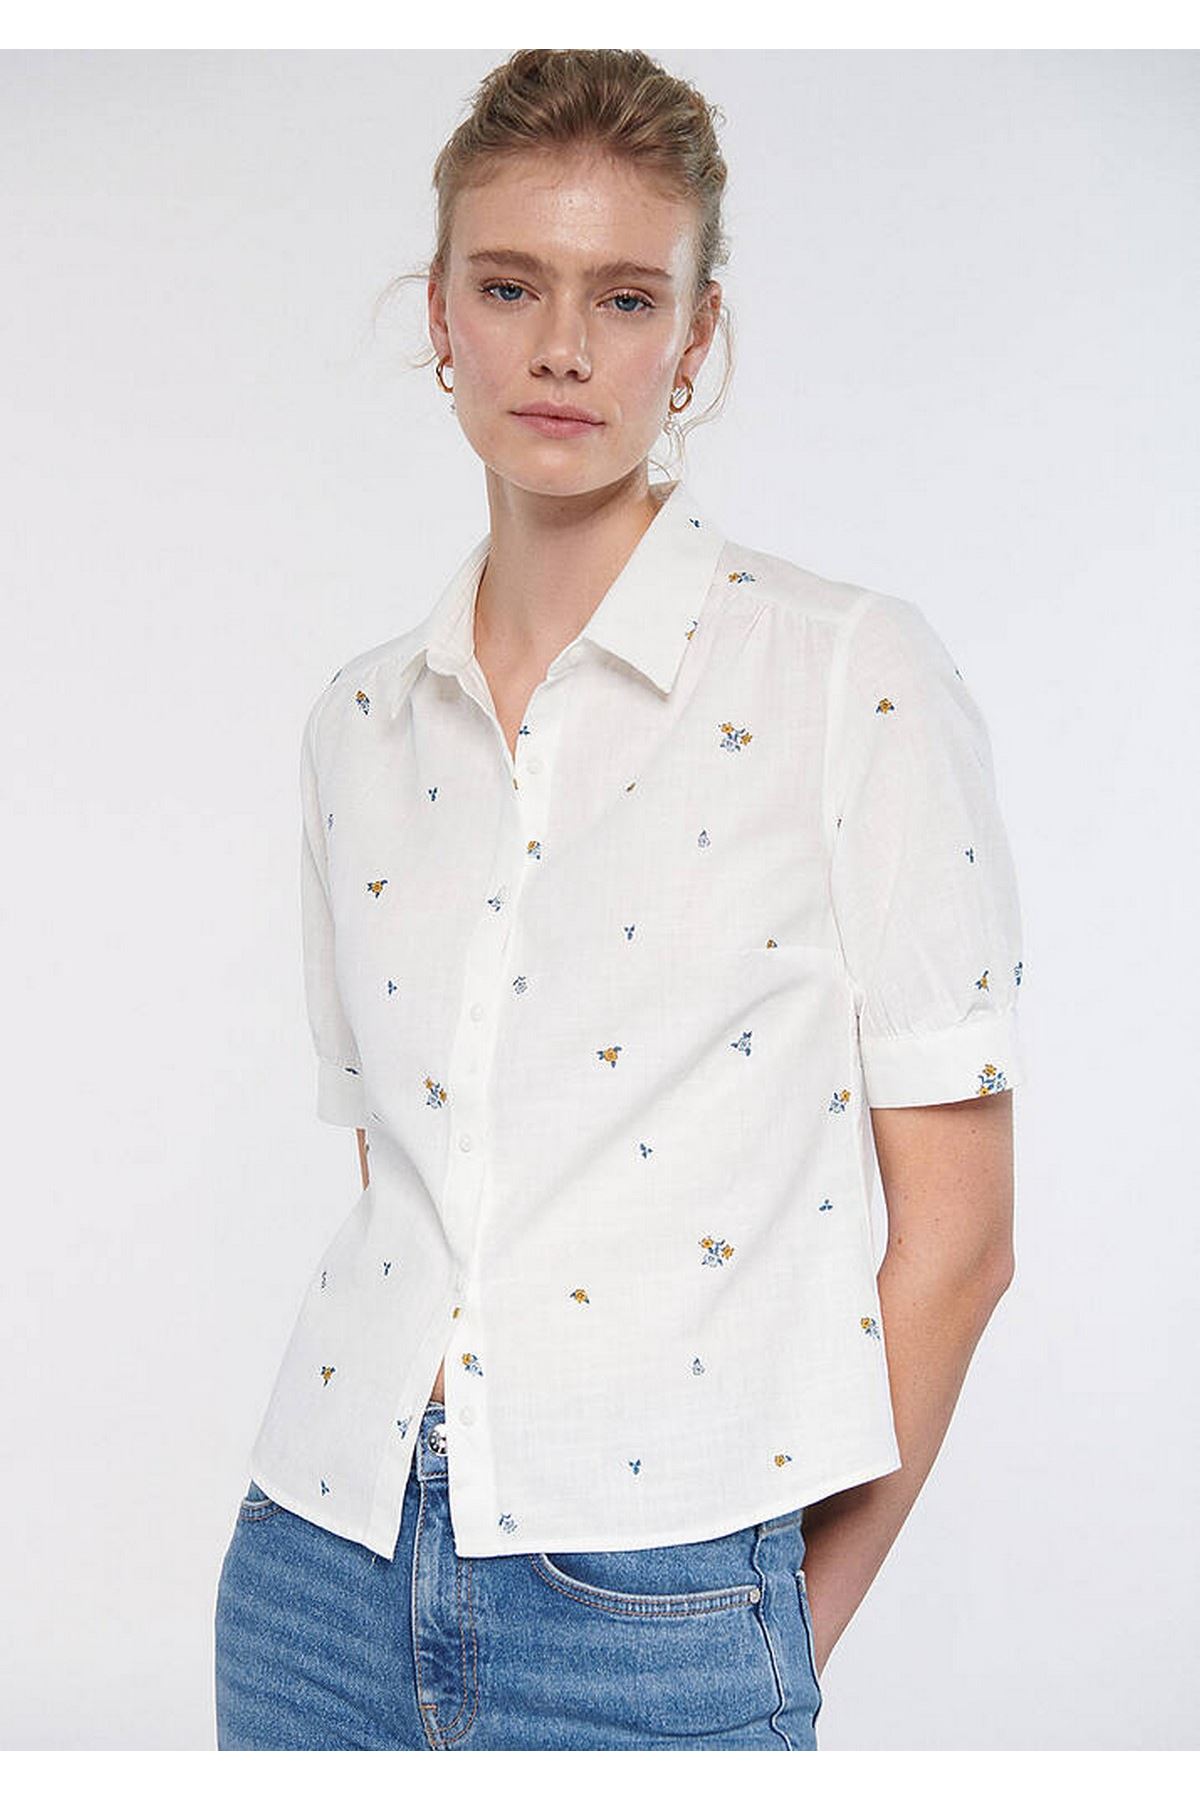 Kısa Kol  Mavi Kadın Beyaz Gömlek - M1210060-83984